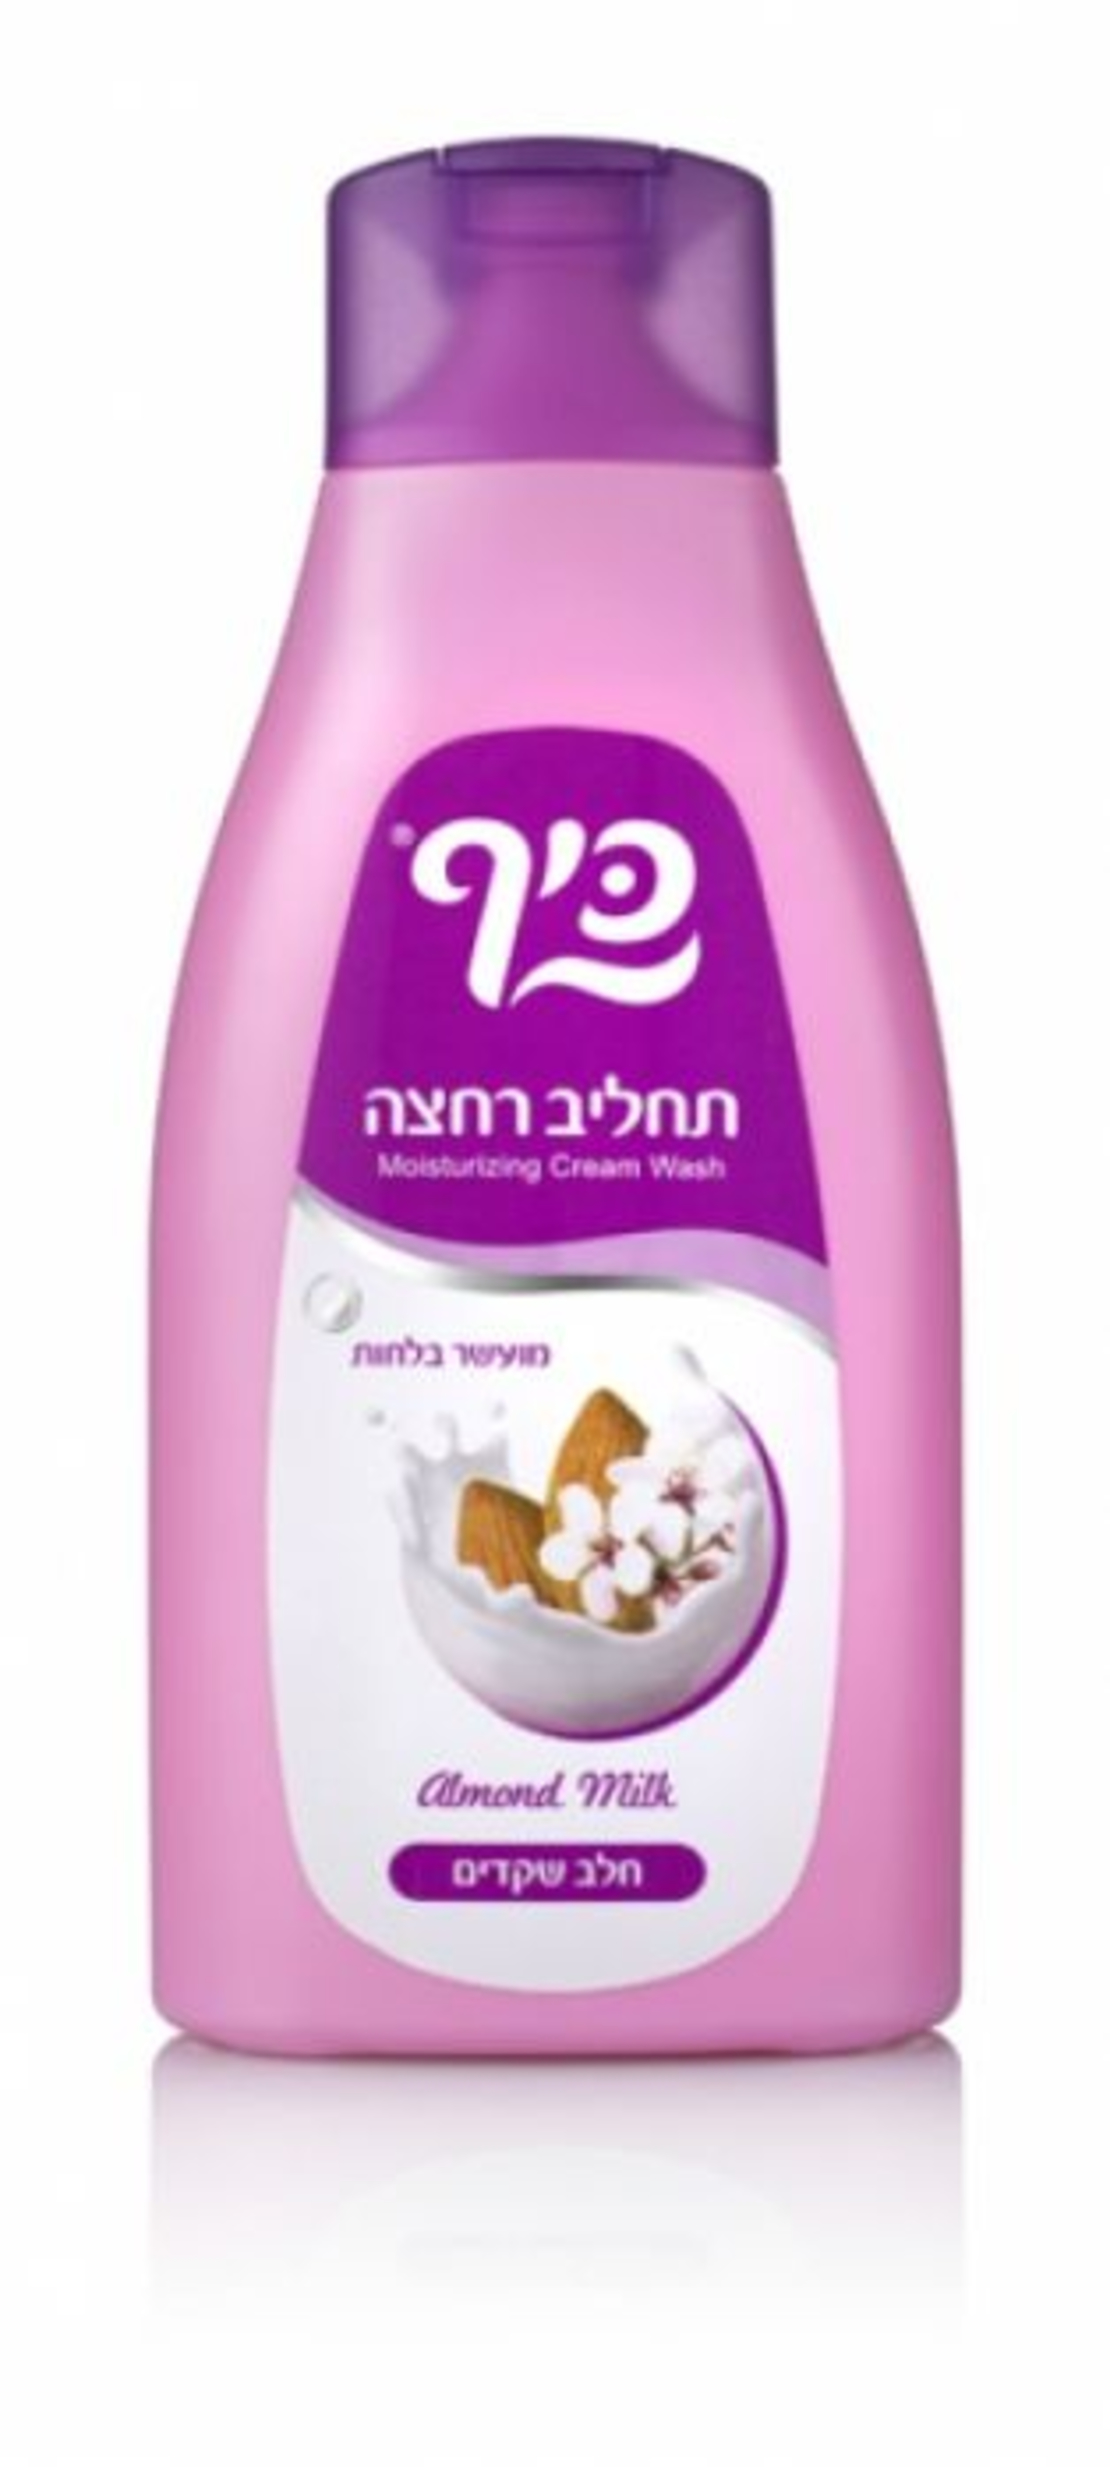 Keff - Moisturizing Cream Wash with Almond Milk 750ml 